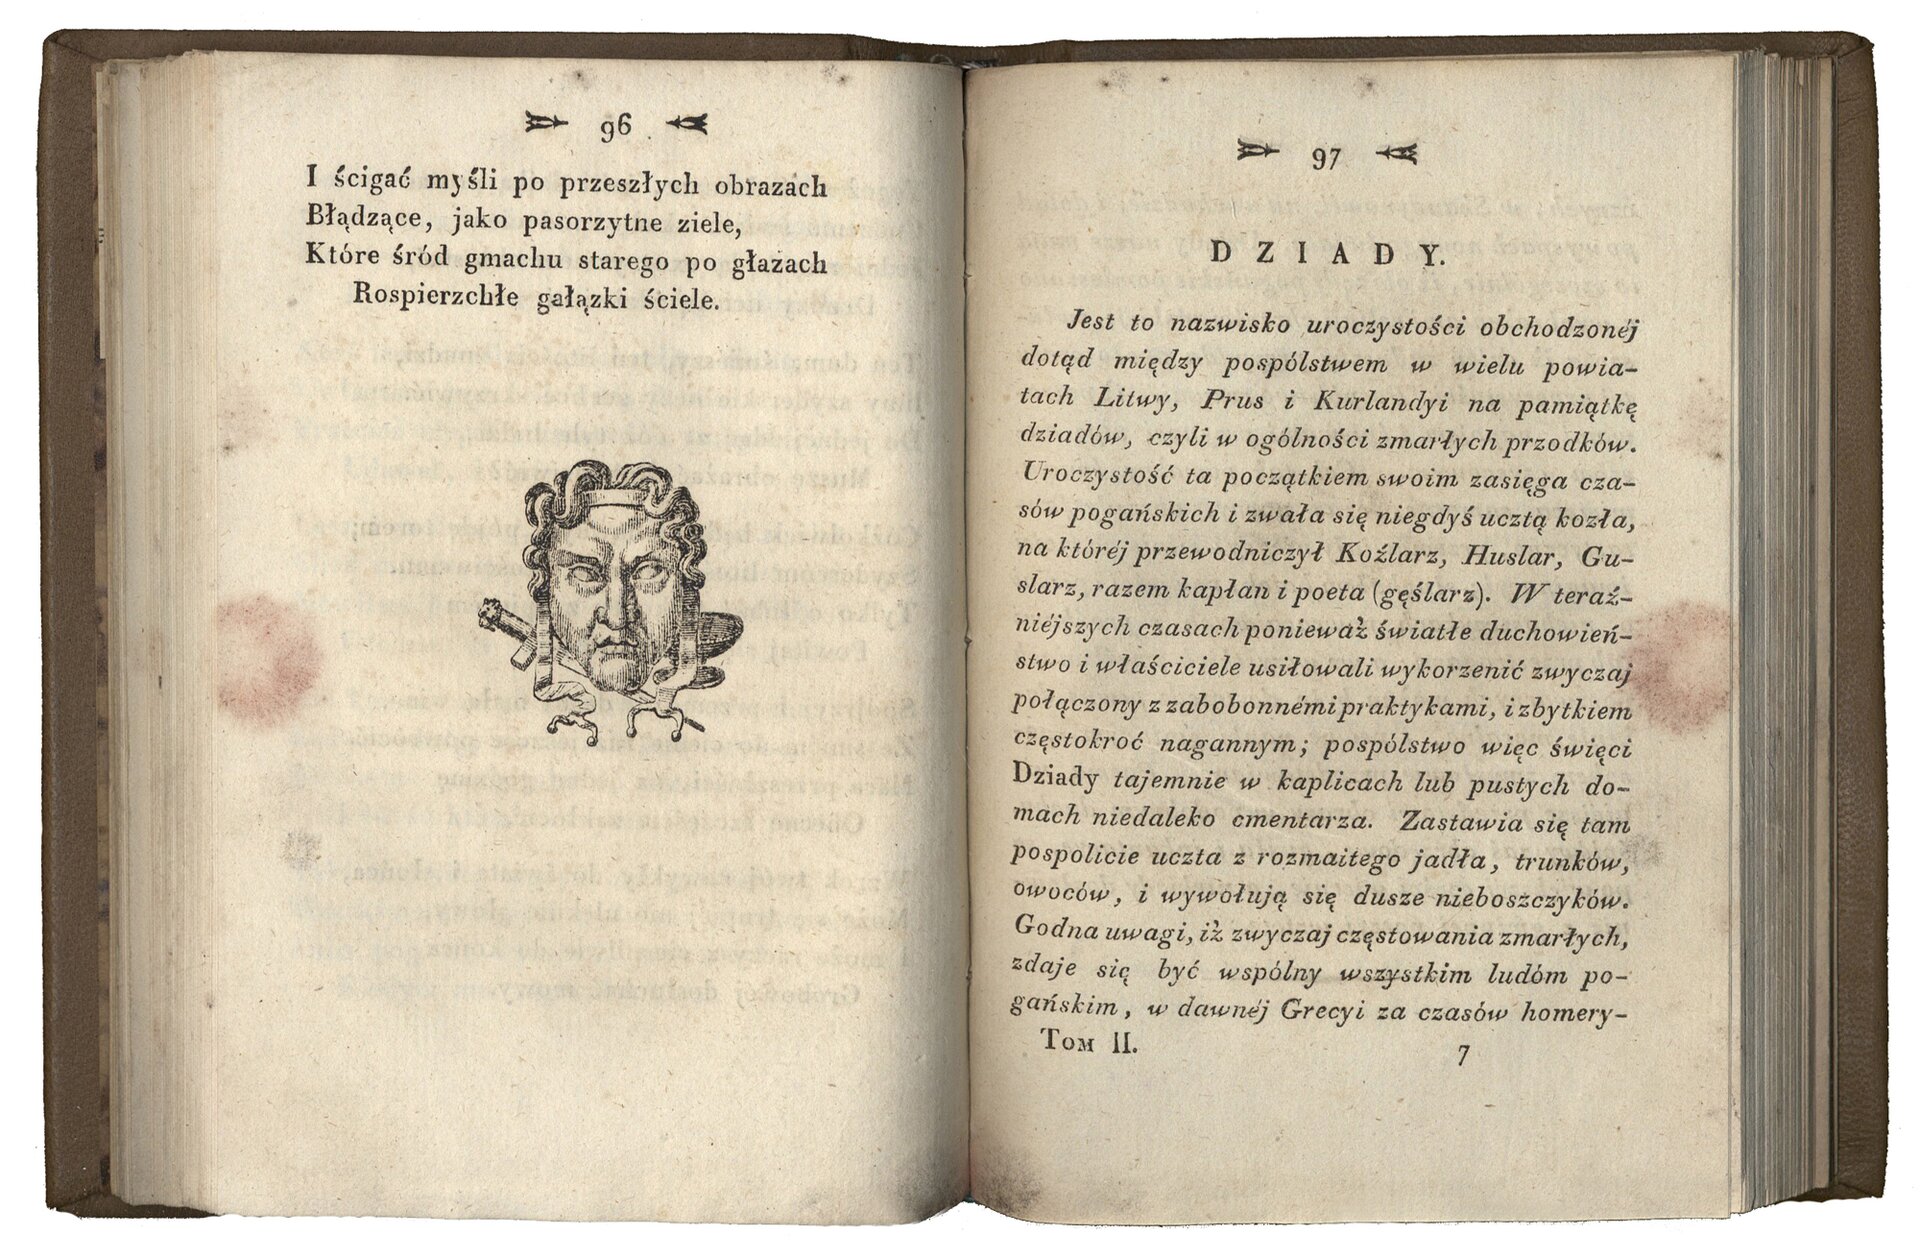 Fotografia otwartej książki. Z lewej strony wizerunek twarzy, maski, z prawej strony napis "Dziady" i tekst małą czcionką. Strona 96 i 97. Numeracja stron znajduje się w górnej części książki.